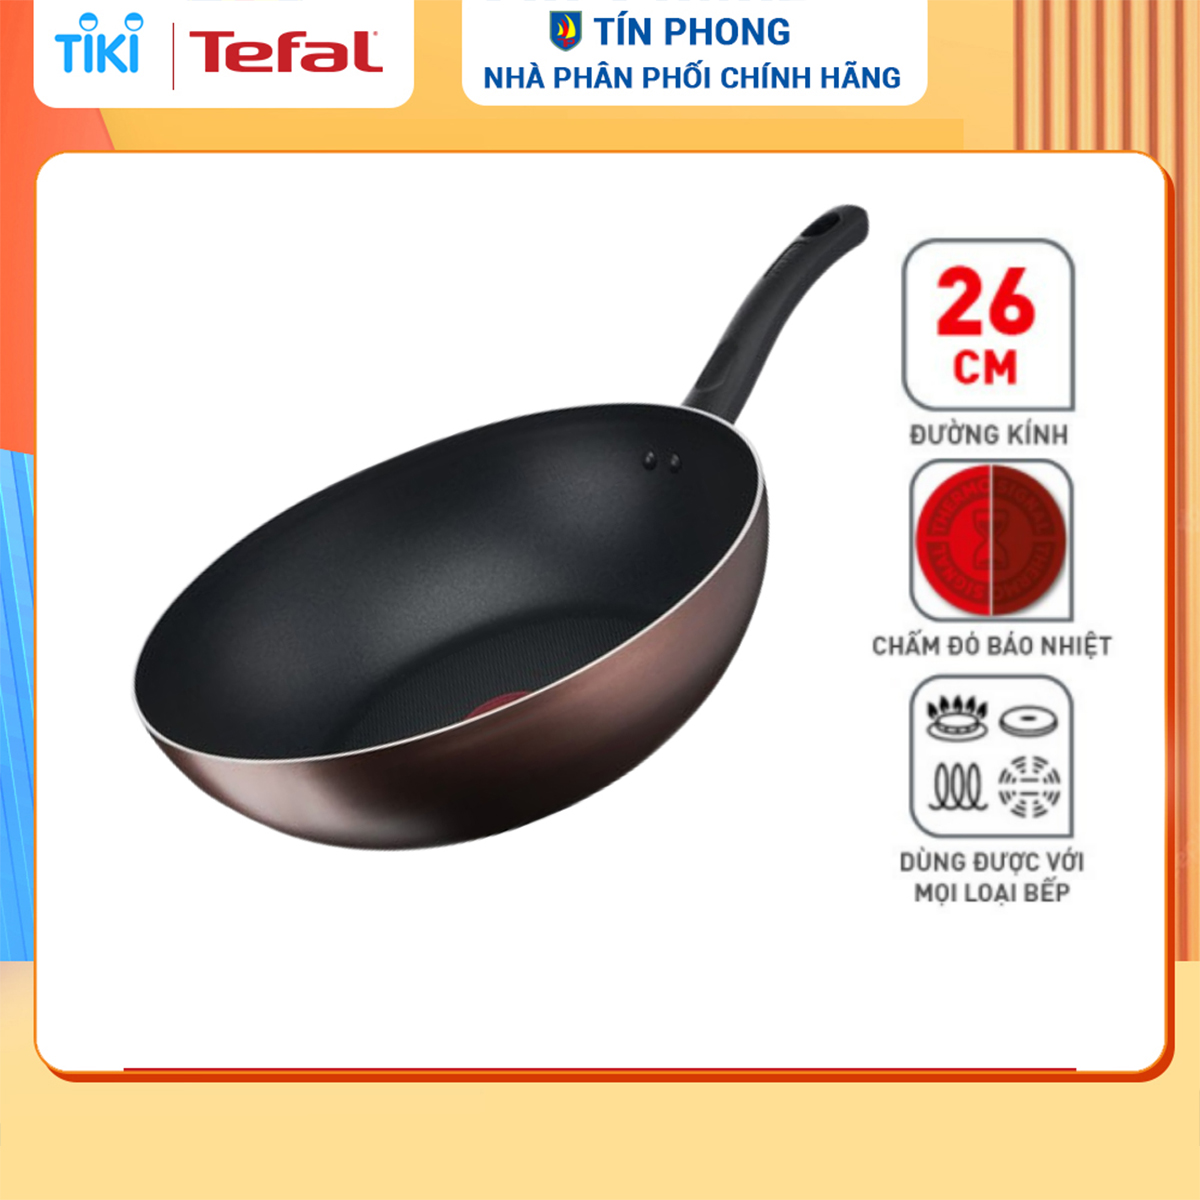 Chảo xào chống dính đáy từ Tefal Day by Day 26cm, dùng cho mọi loại bếp- Hàng chính hãng